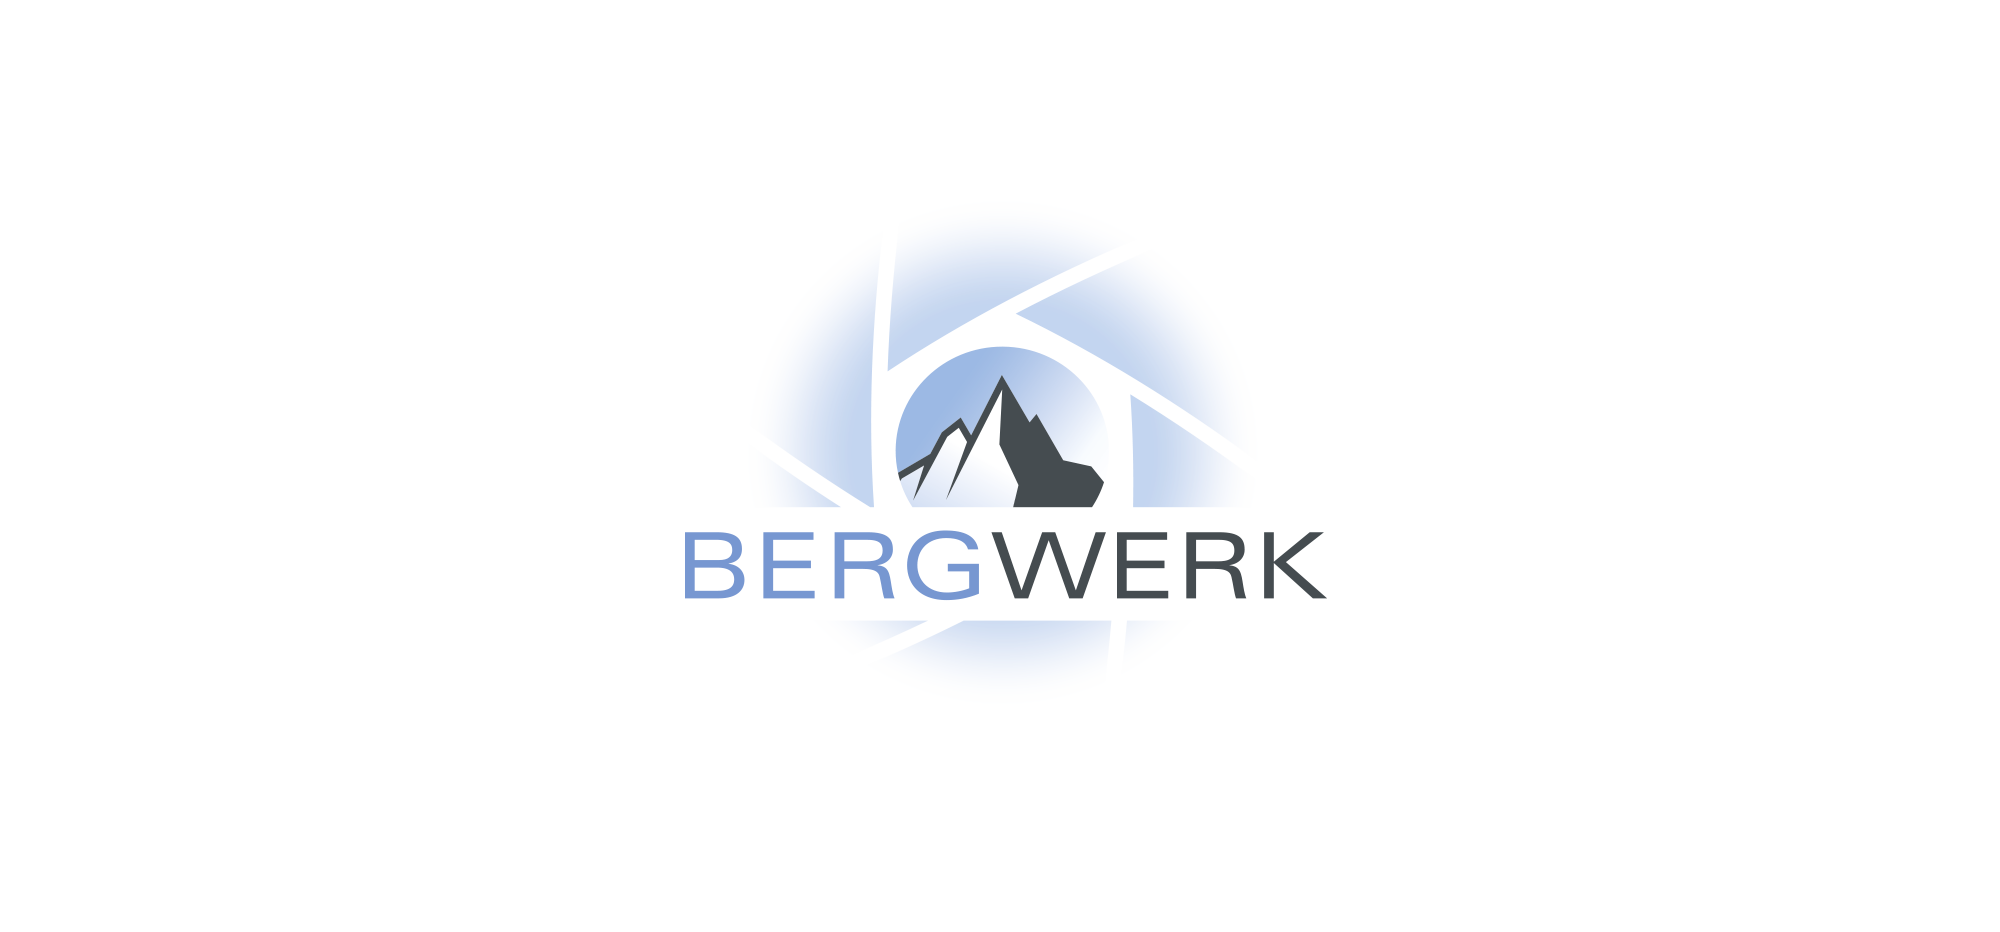 Bergwerk, Heinz Friedrich, Wolkenstein-IT, ACS, Sonderpreis Baumarkt, Gottfried, Gessner, Optik Schneider, ITS-Elektrotechnik, RSB, Cent